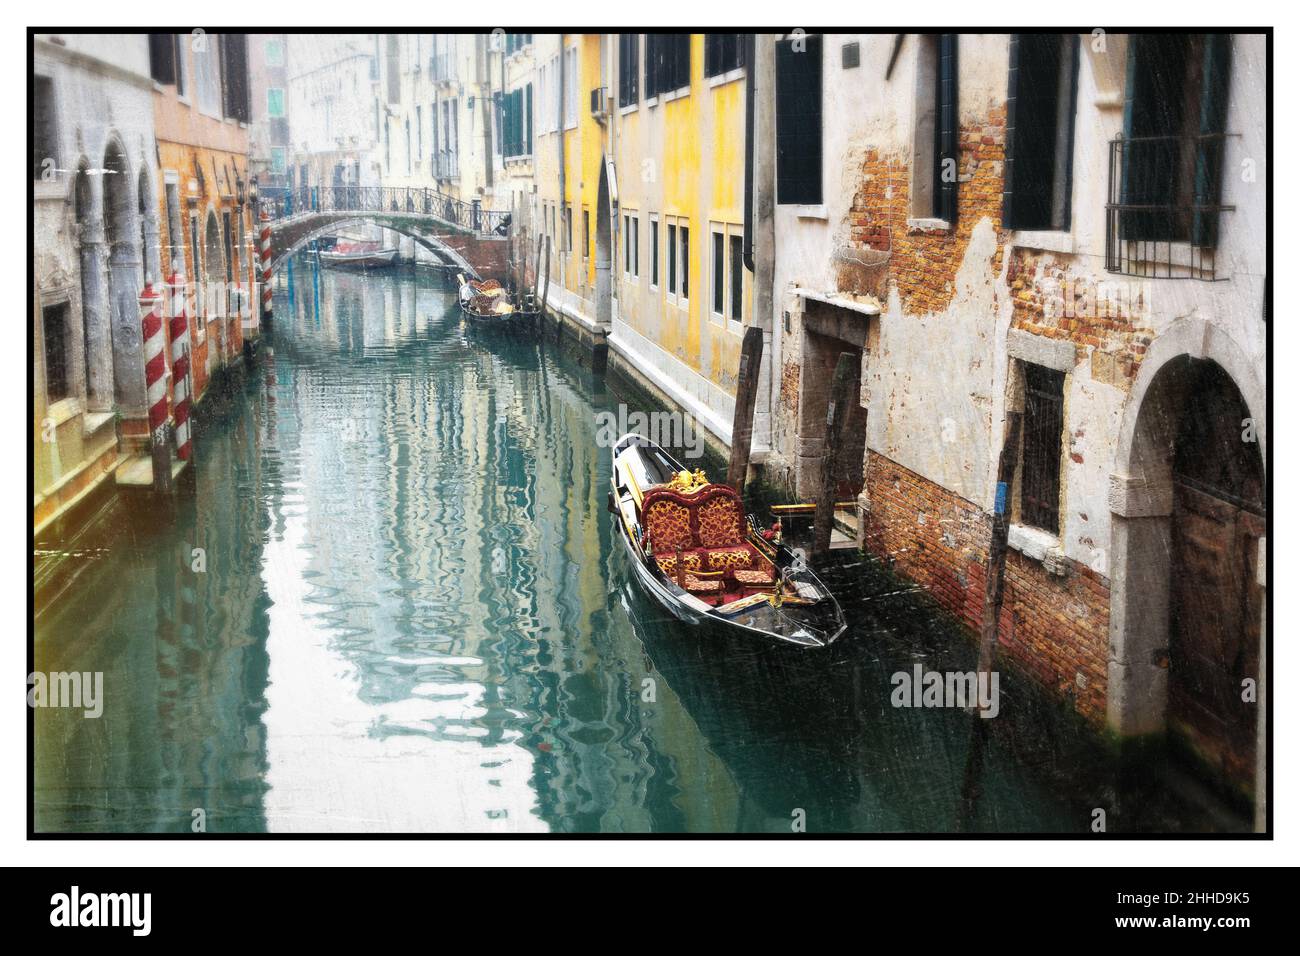 Romantische venezianische Kanäle. Alte enge Gassen von Venedig. Sepia-getöntes Bild im Retro-Stil. Italien Stockfoto